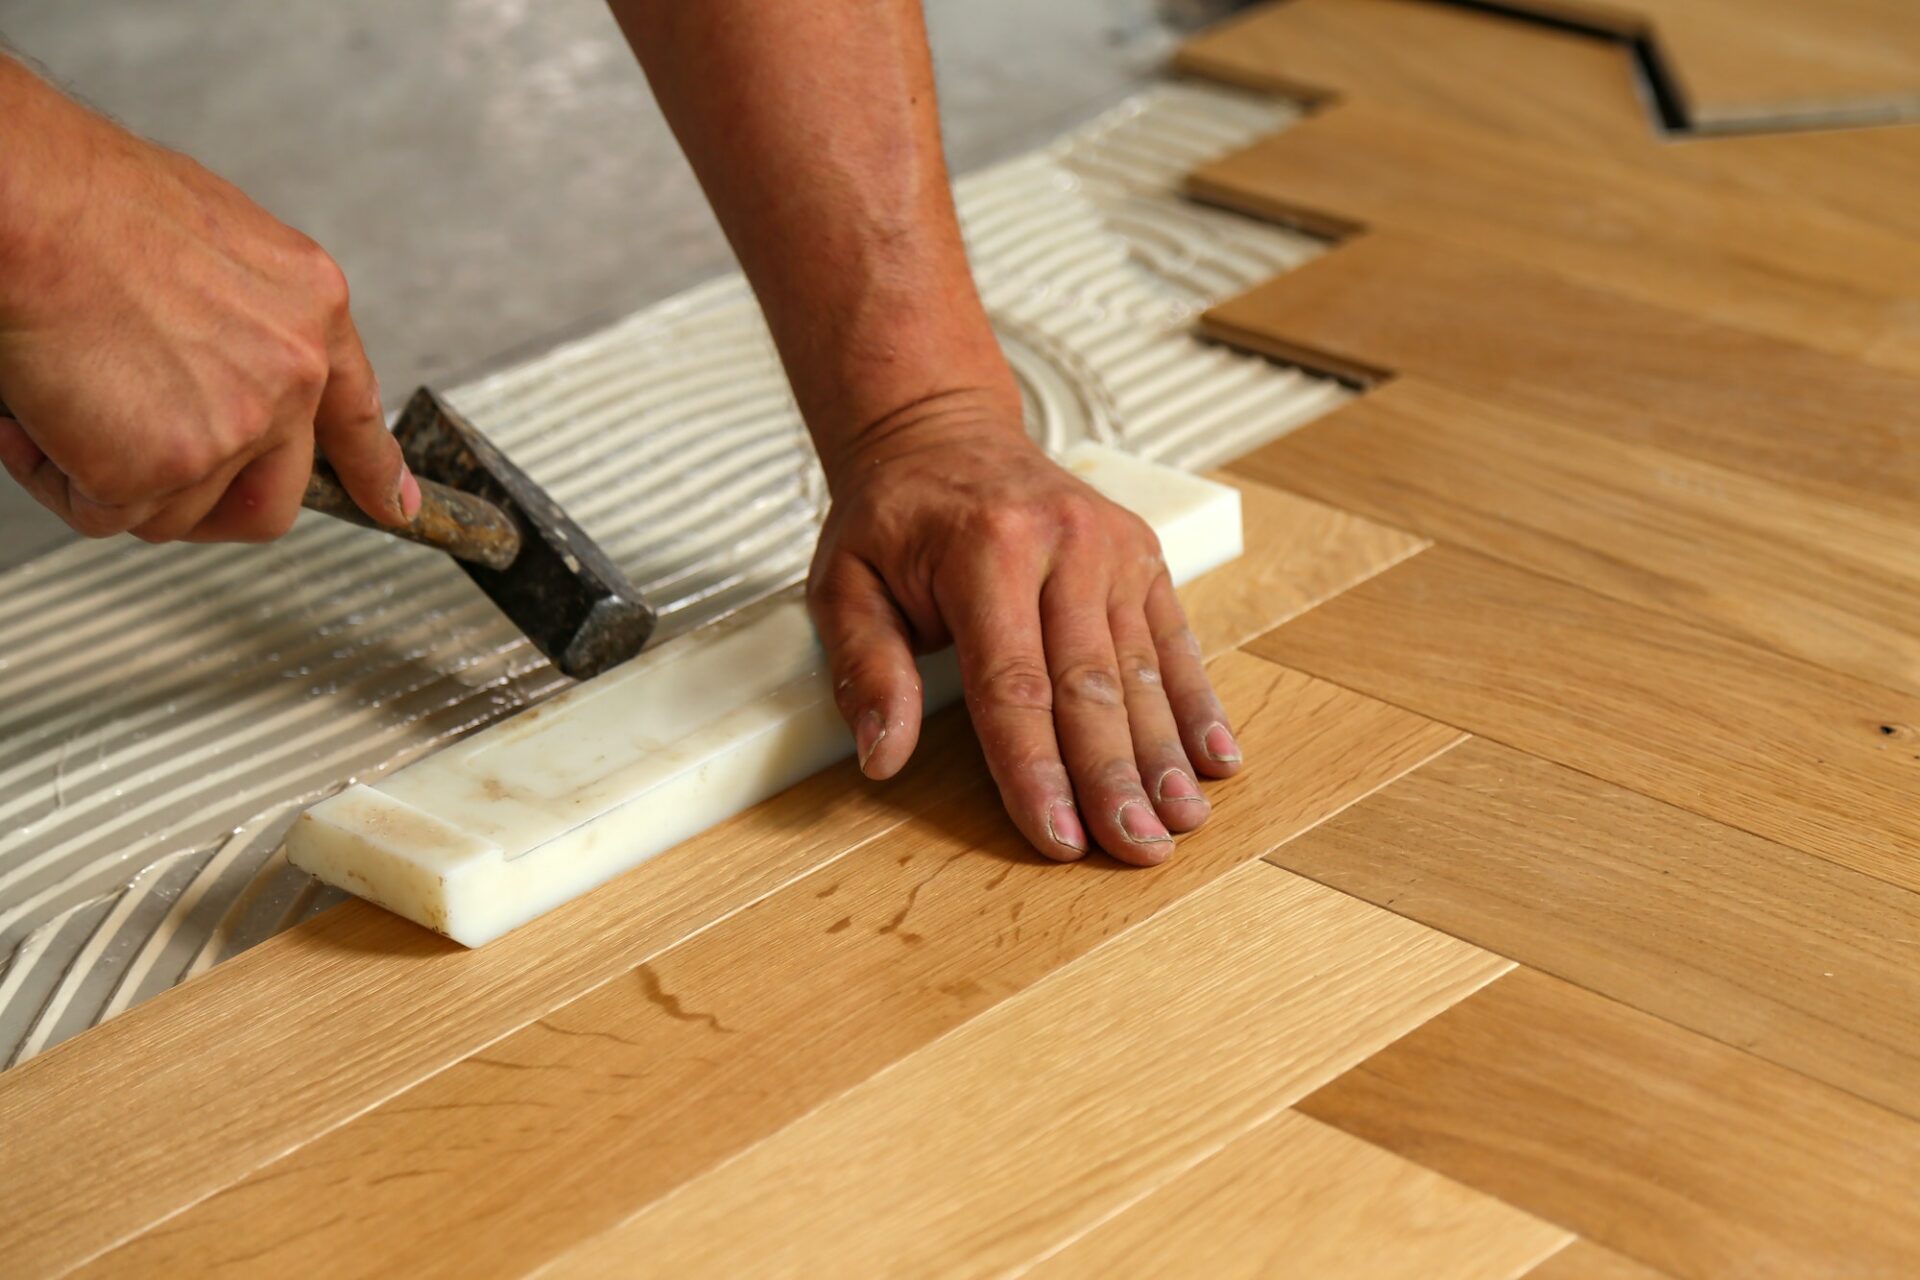 Worker installing parquet flooring